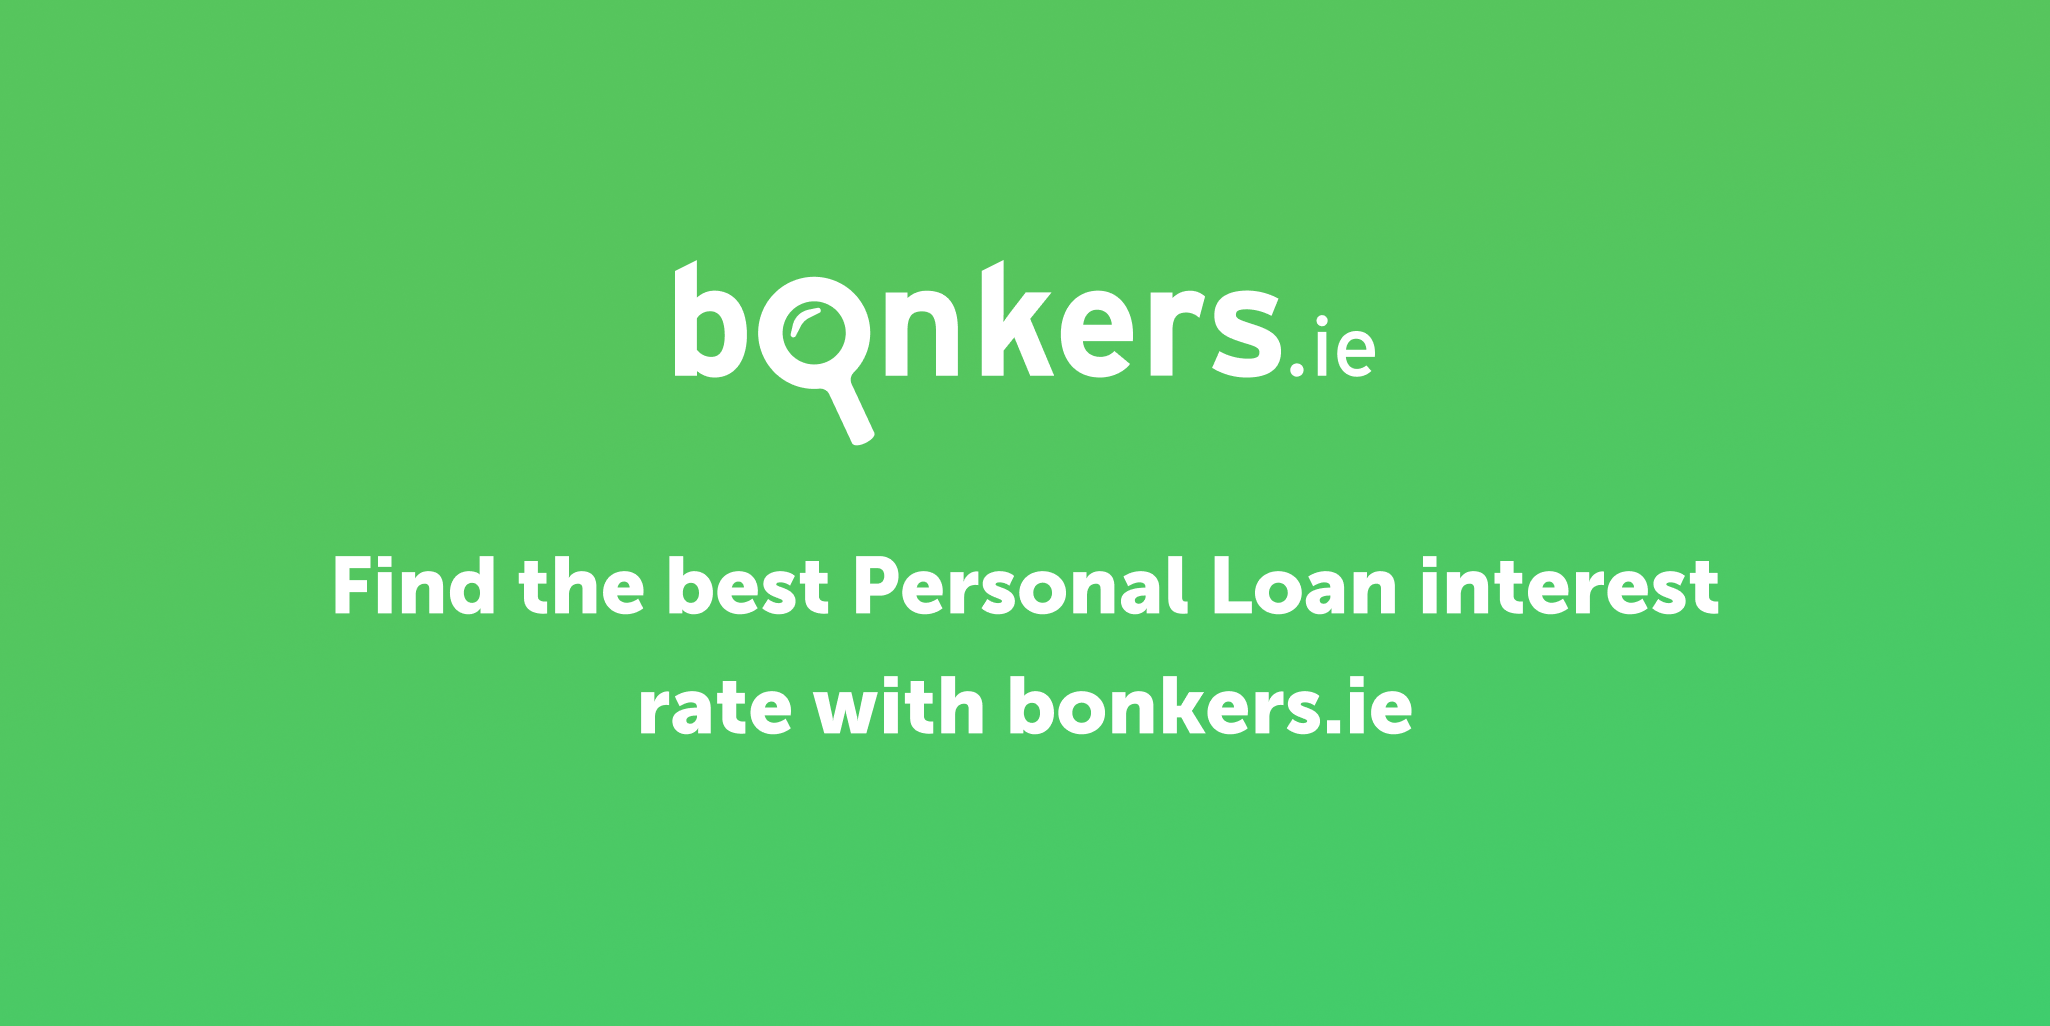 www.bonkers.ie